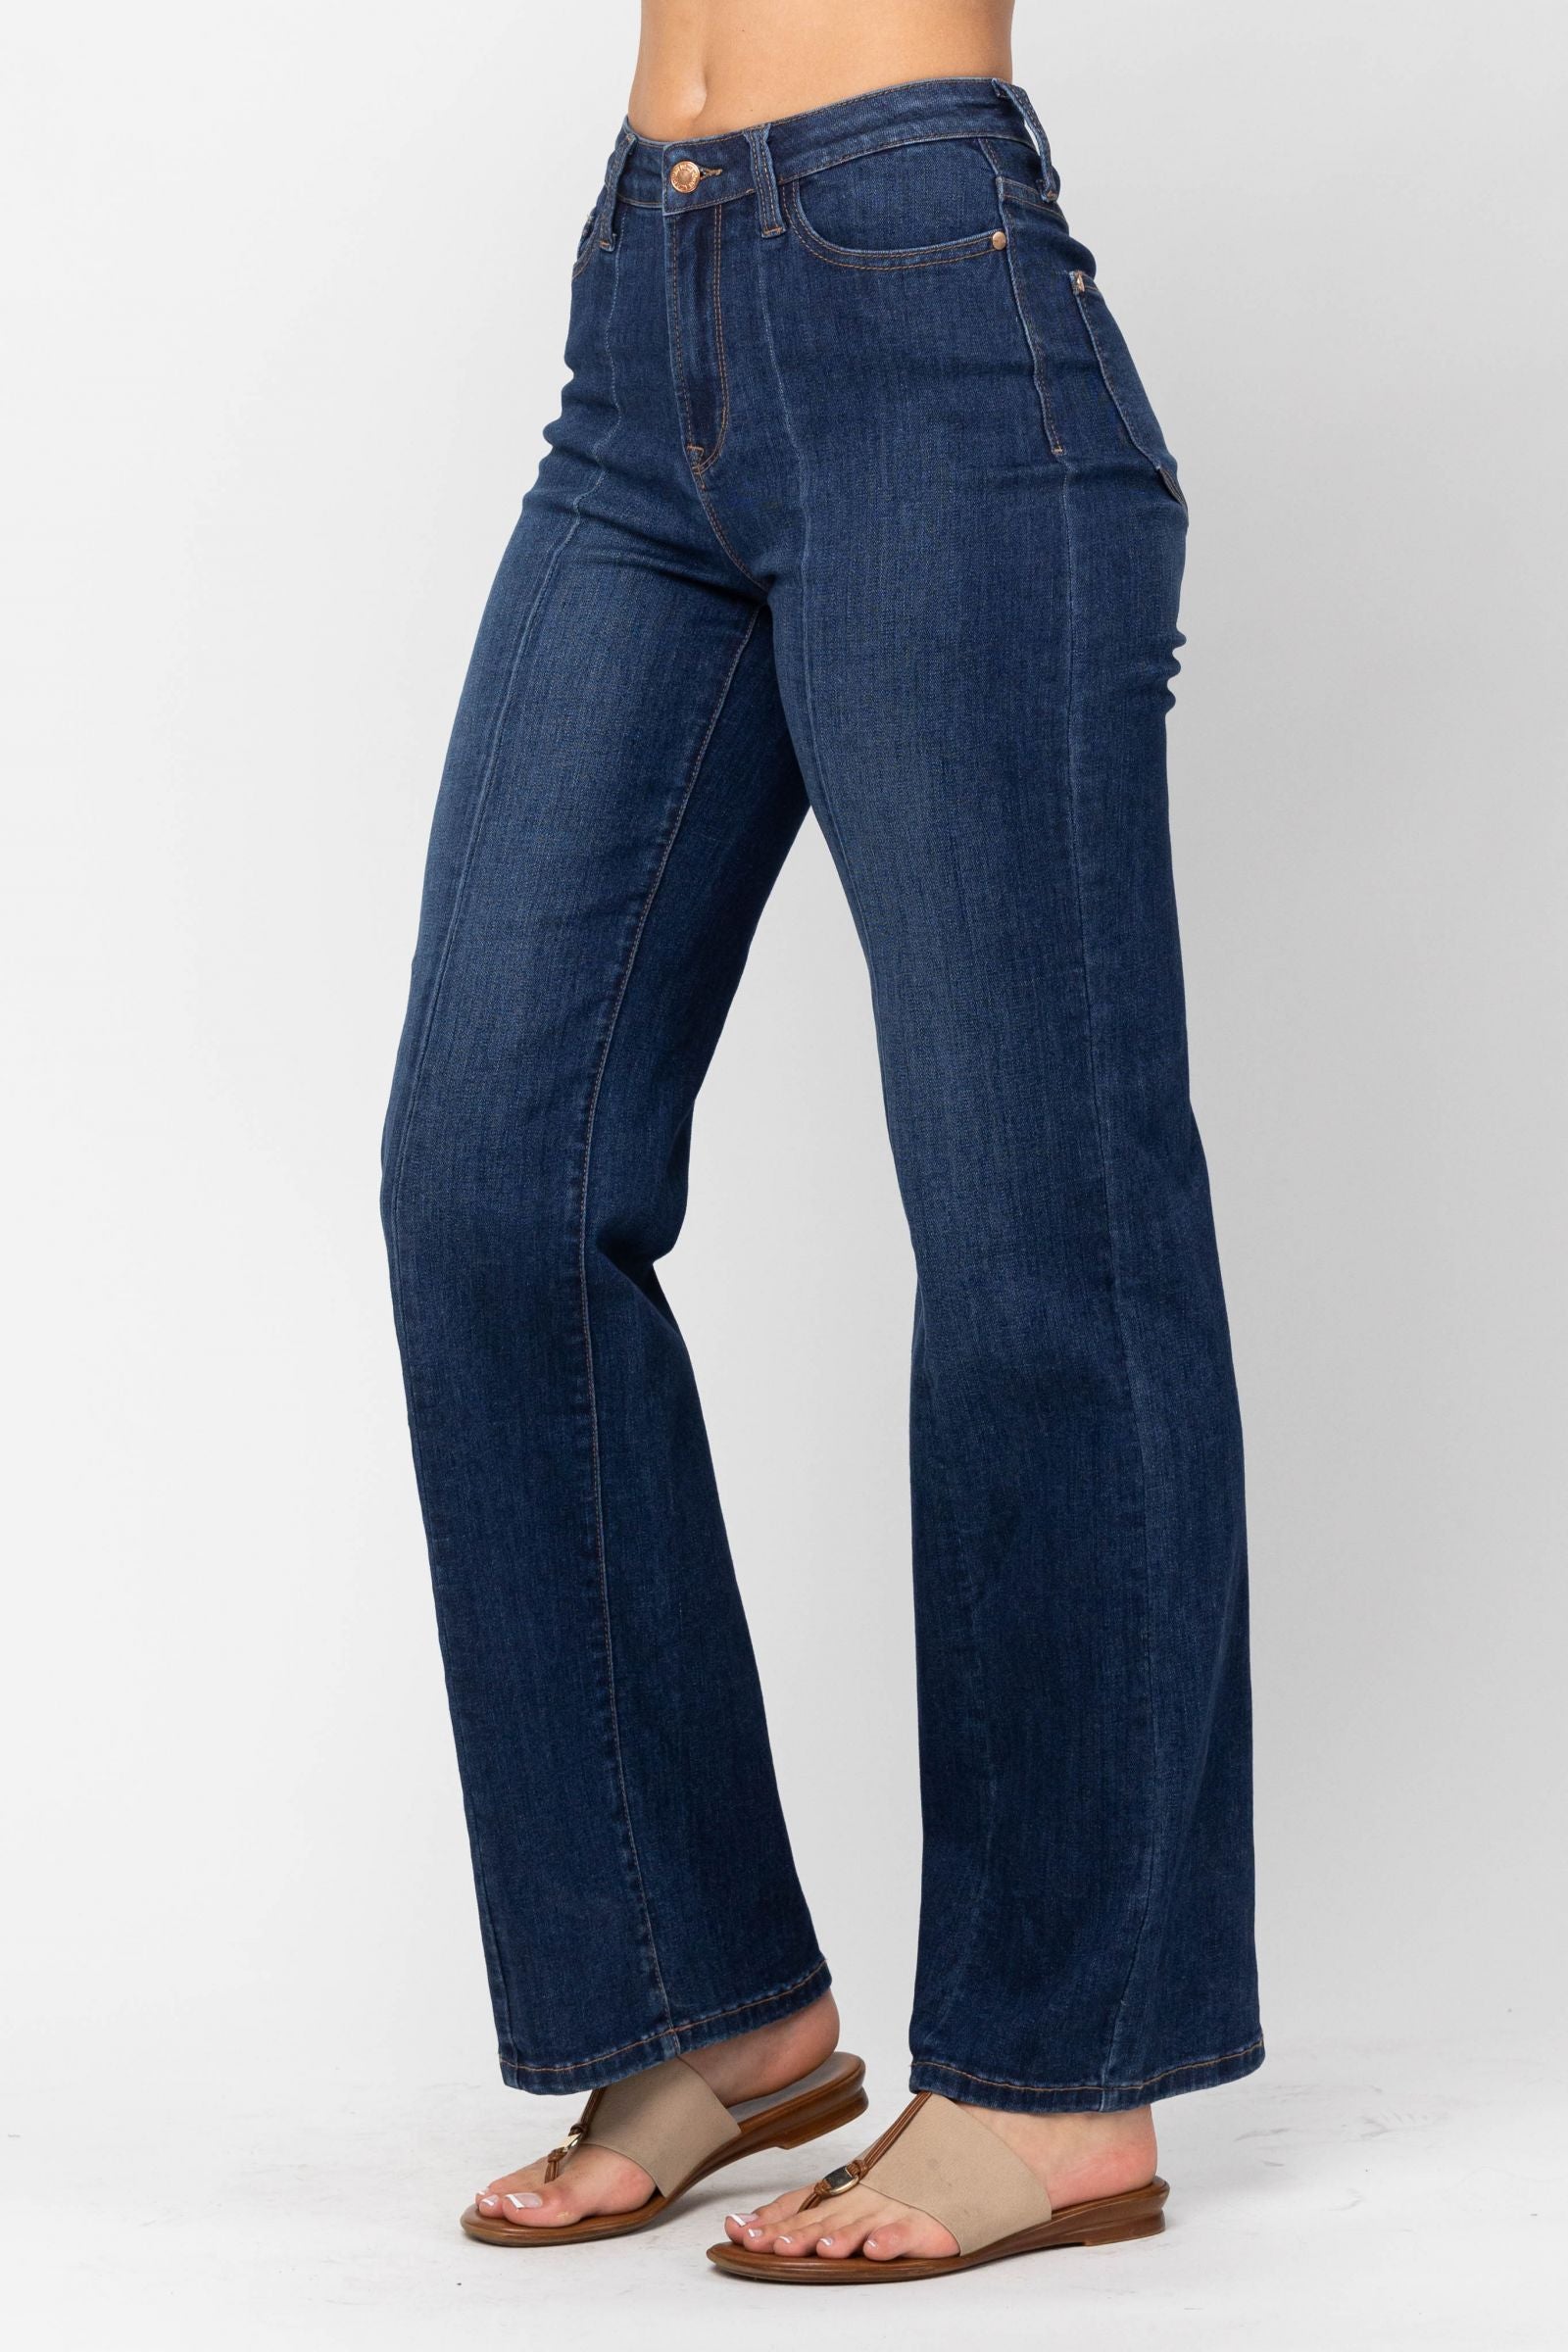 Judy Blue High Waisted Trouser Jean